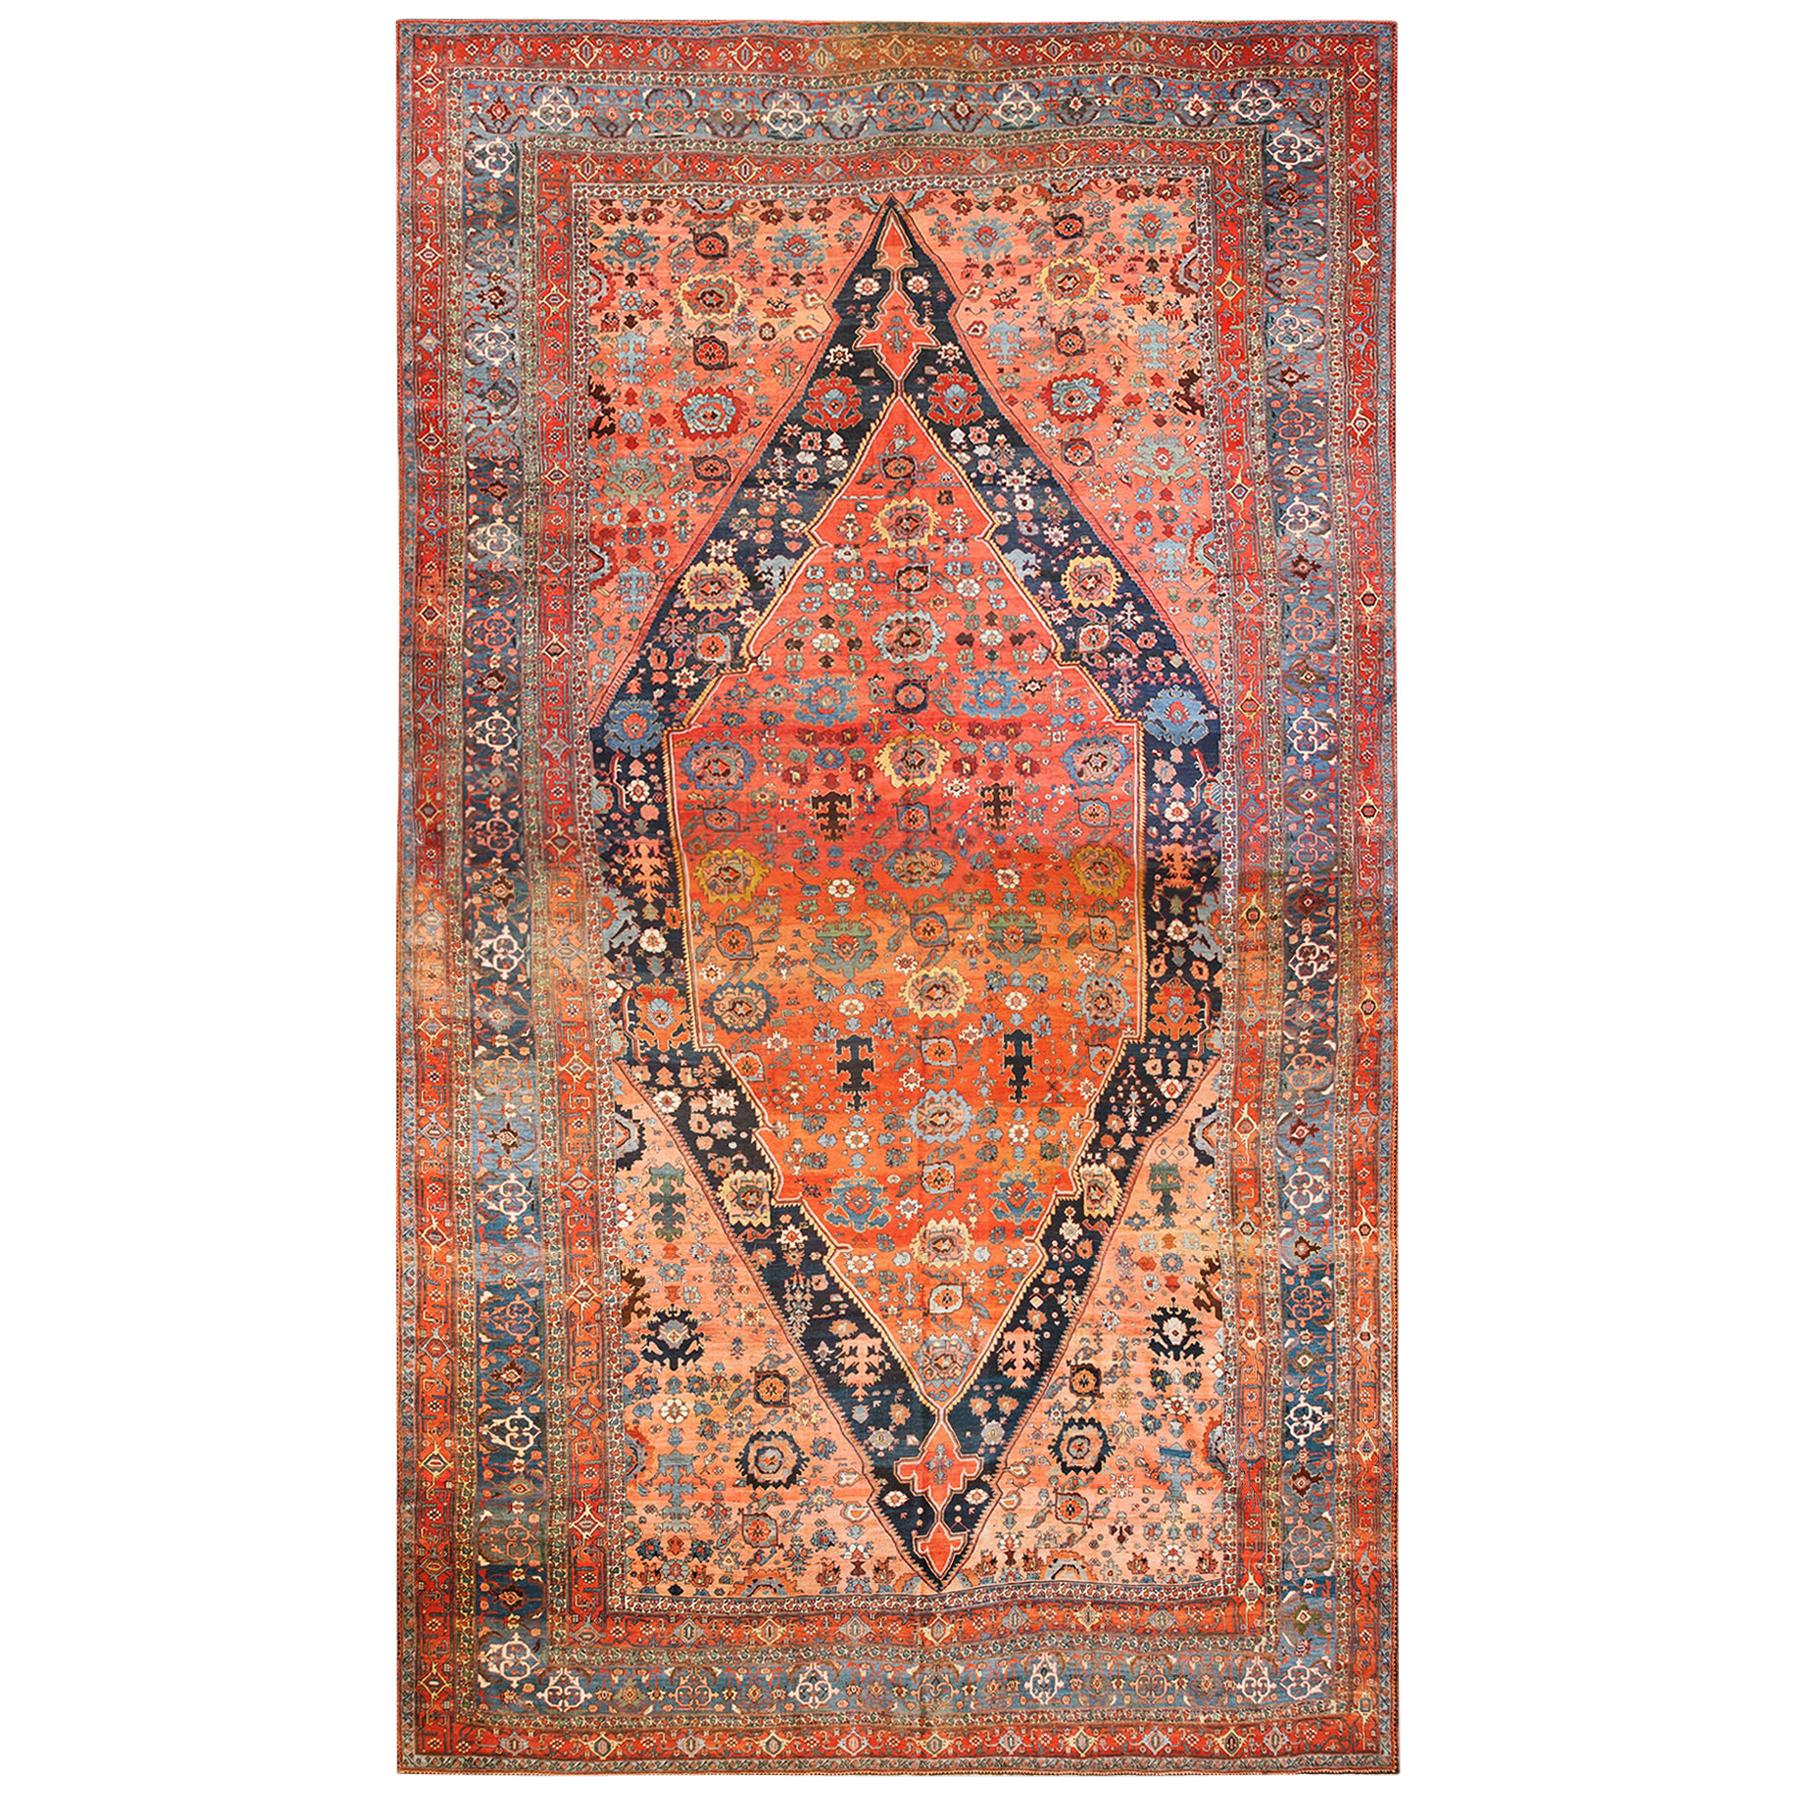 Persischer Bijar-Teppich aus dem 19. Jahrhundert  ( 15' x 25'9"" - 457 x 785 cm) 